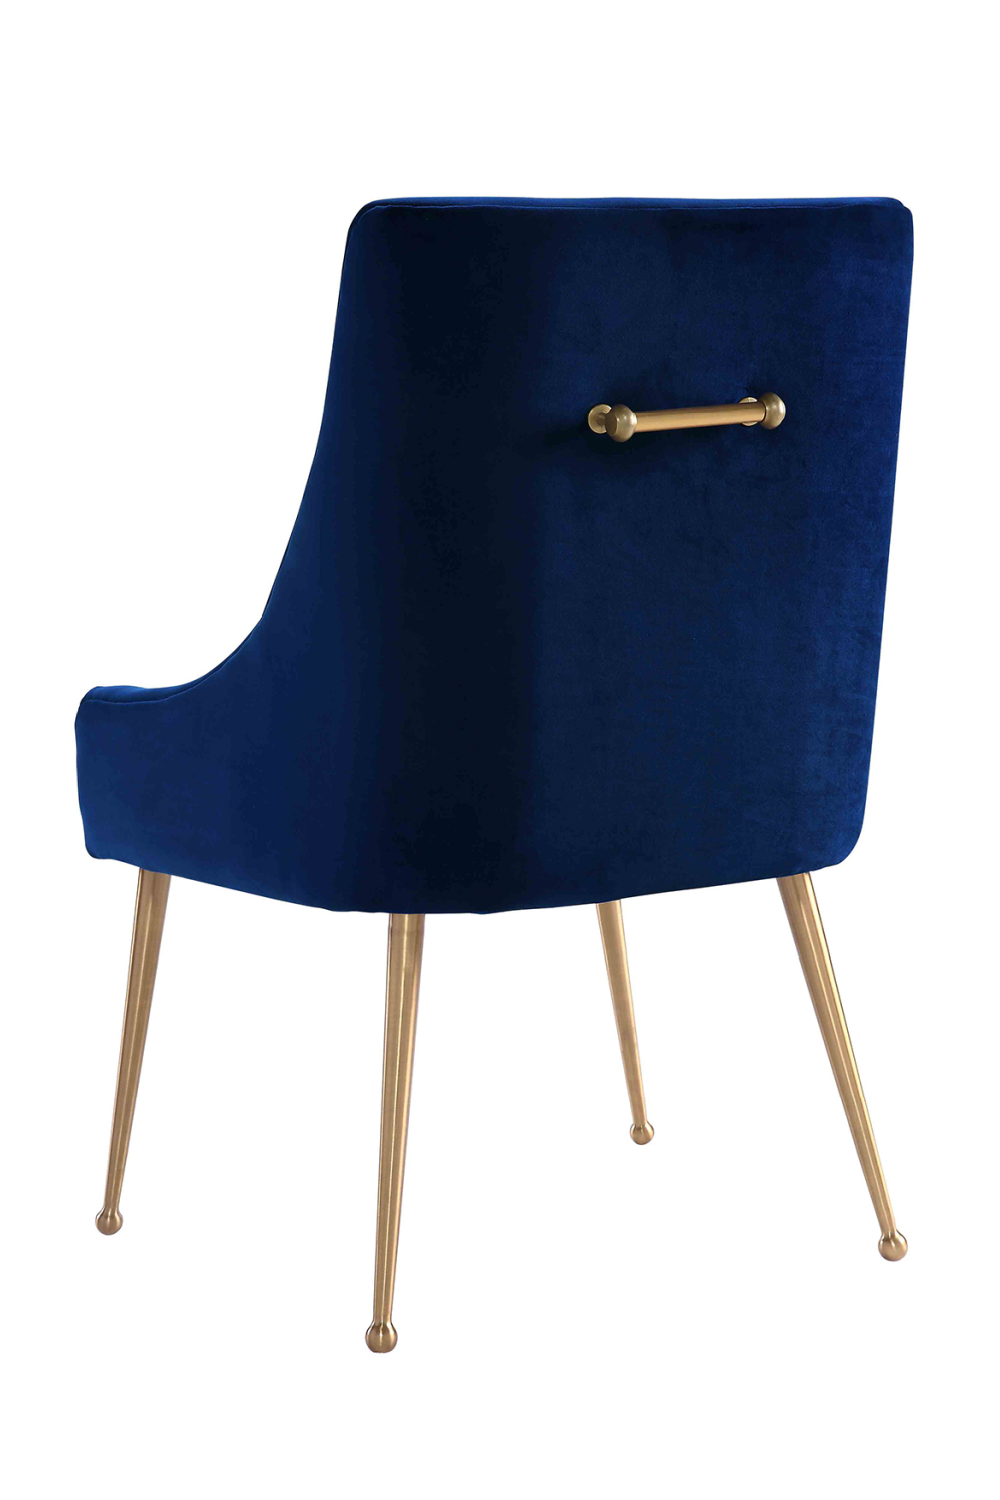 Blue Velvet Dining Chair | Liang & Eimil Cohen | Oroa.com